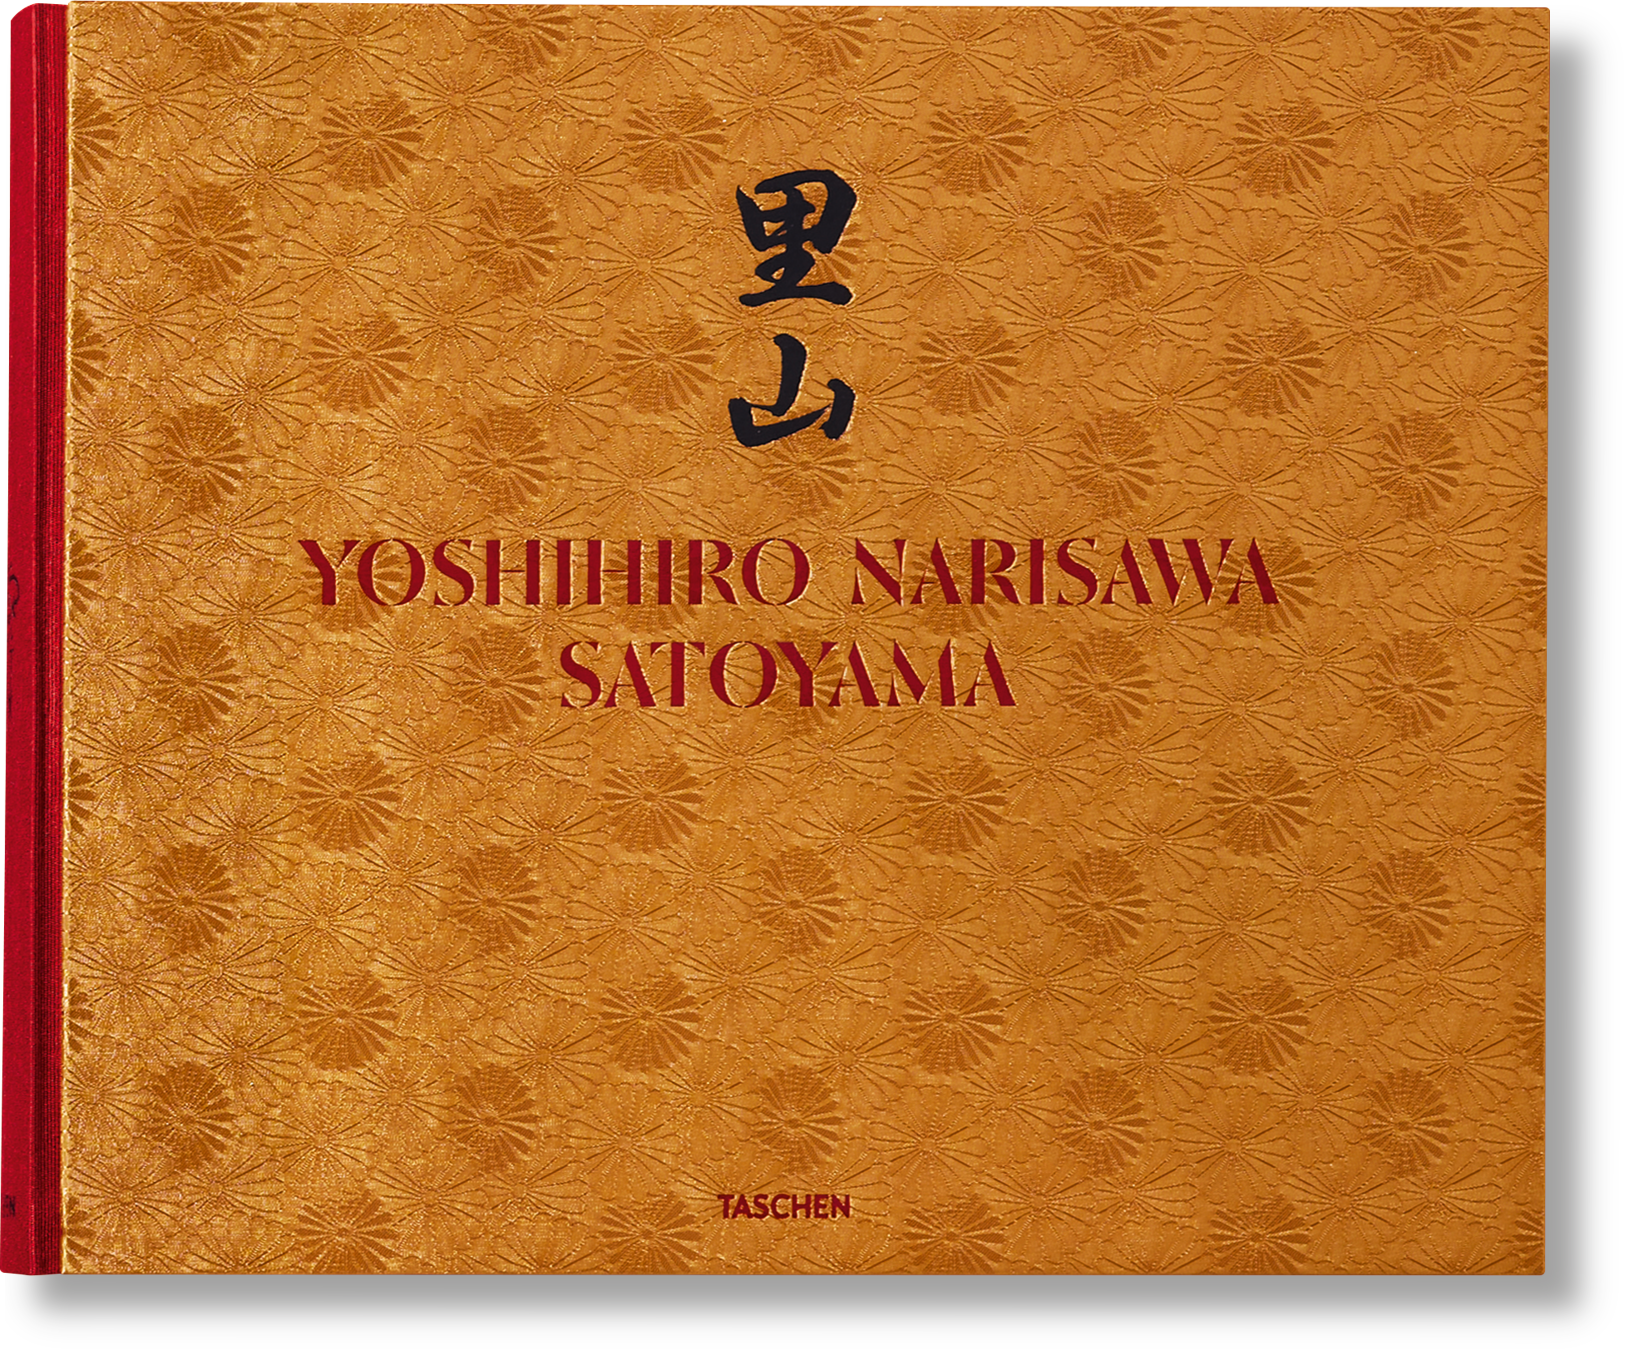 TASCHEN Books: Yoshihiro Narisawa. Satoyama Cuisine